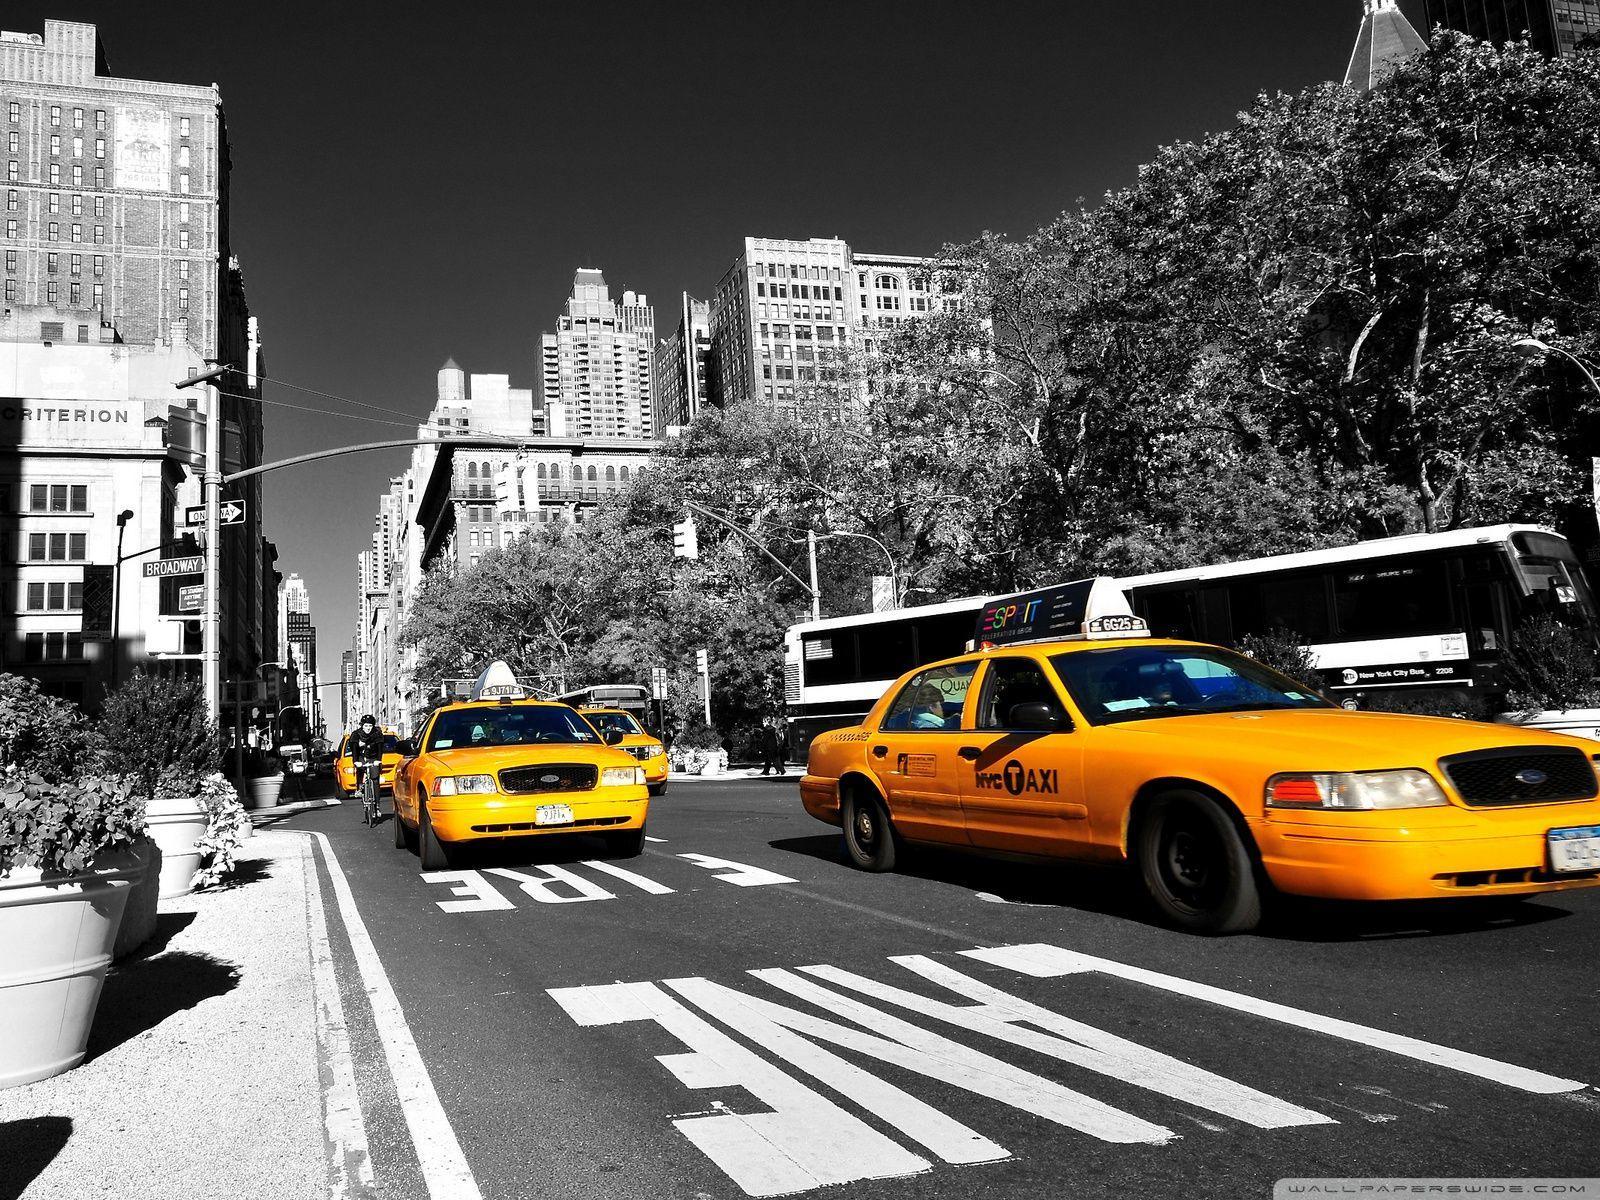 New York Taxi HD desktop wallpaper, High Definition, Fullscreen